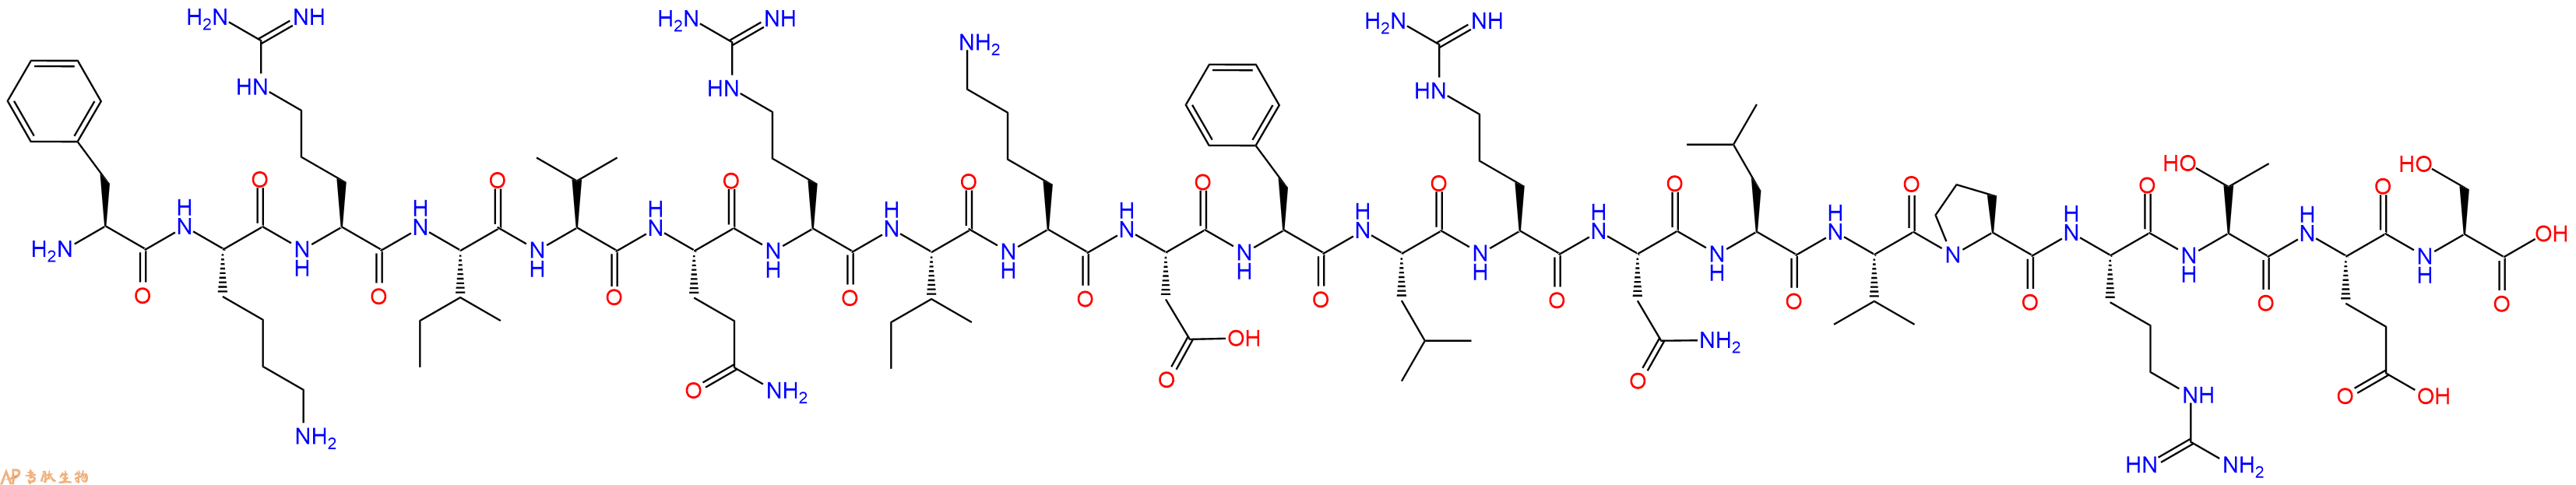 多肽生物产品LL-37 (17-37)913736-94-4